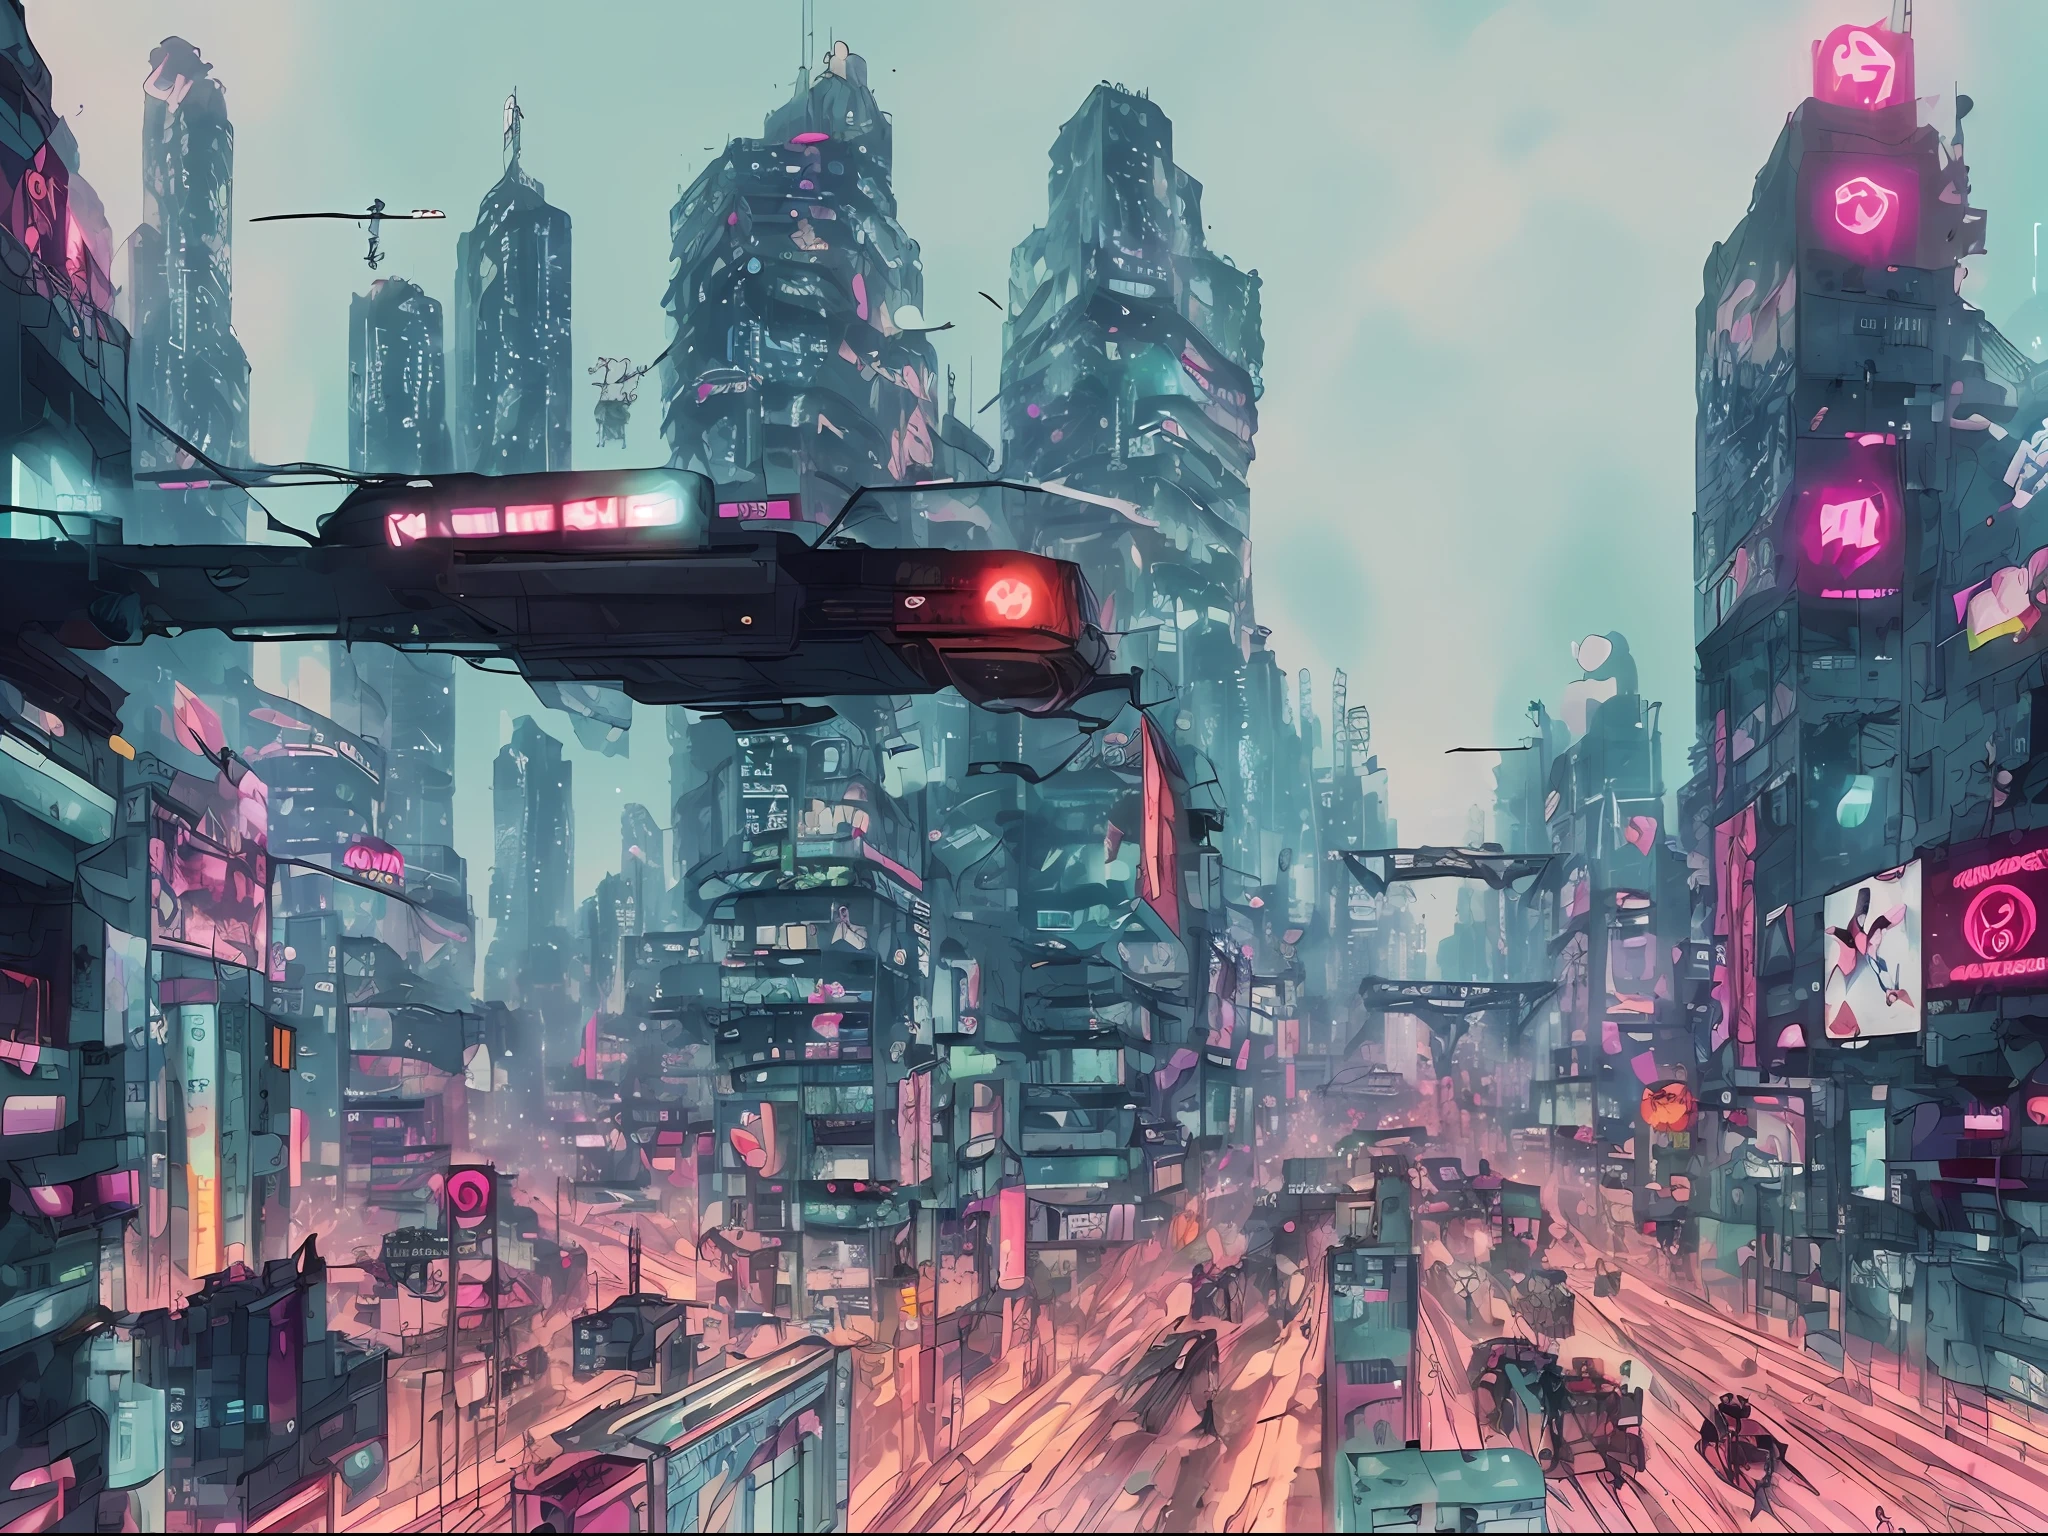 (傑作), (最高の品質), (超詳細な), (図), (タロット), (サイバーパンク), (植物), (美しい) - V6 アニメ風のアリータ・コンバット・エンジェルの街が、住民が熱心に見つめる中、巨大な赤いロボットに侵略されるイメージ